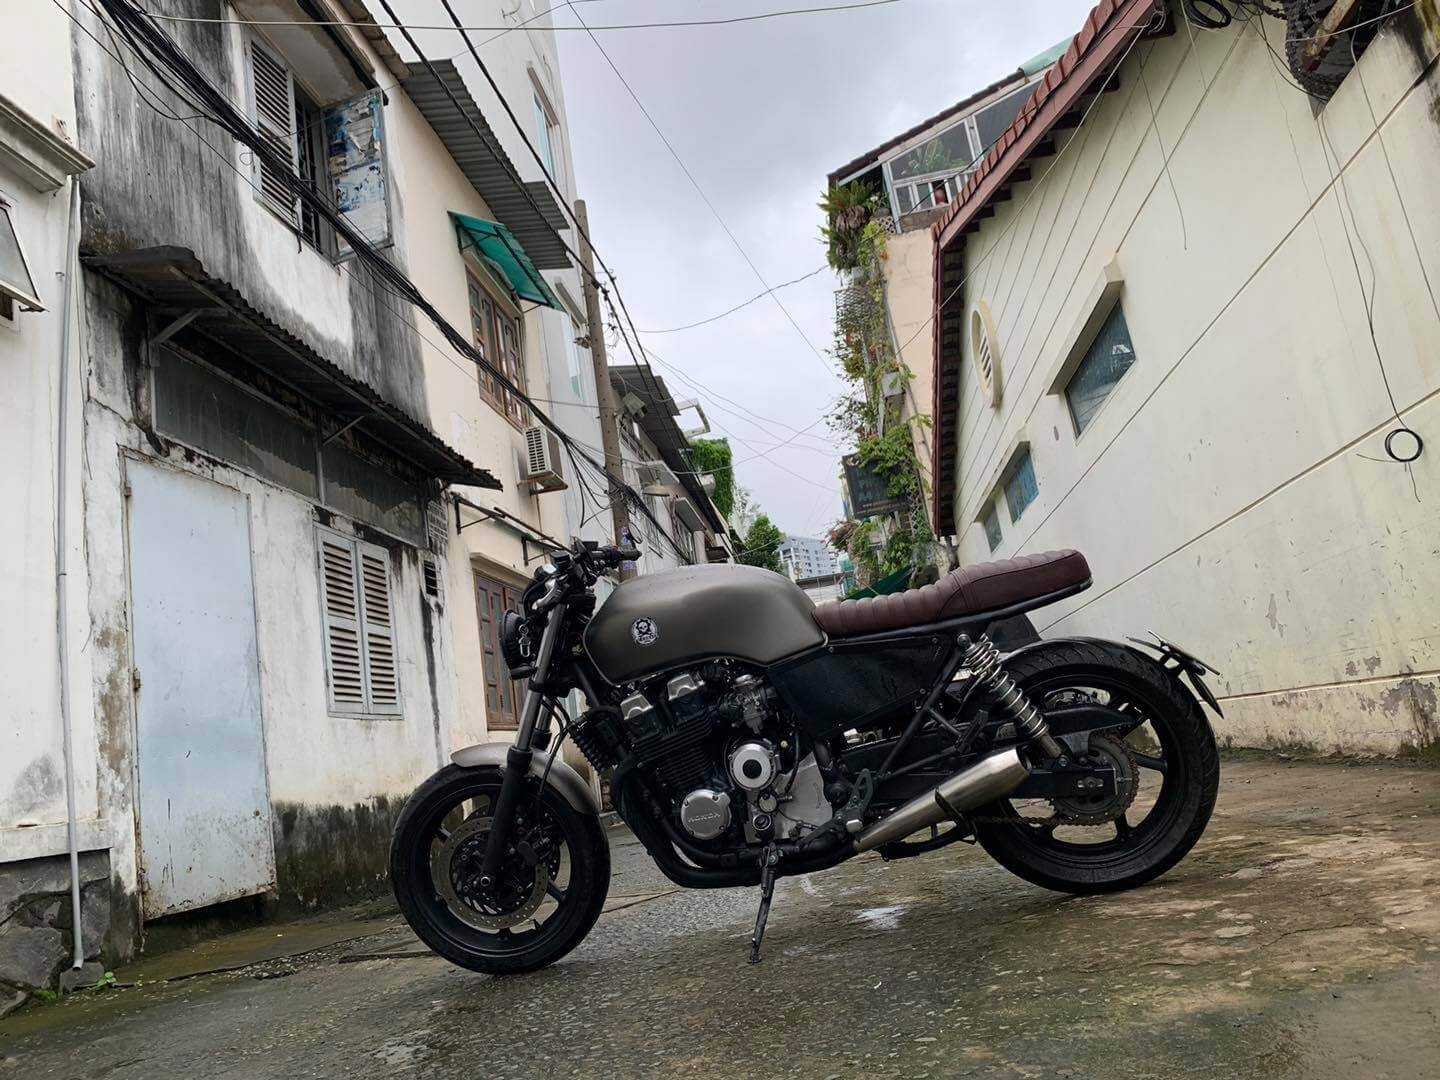 Honda CB750F mod by Tự Thanh Đa